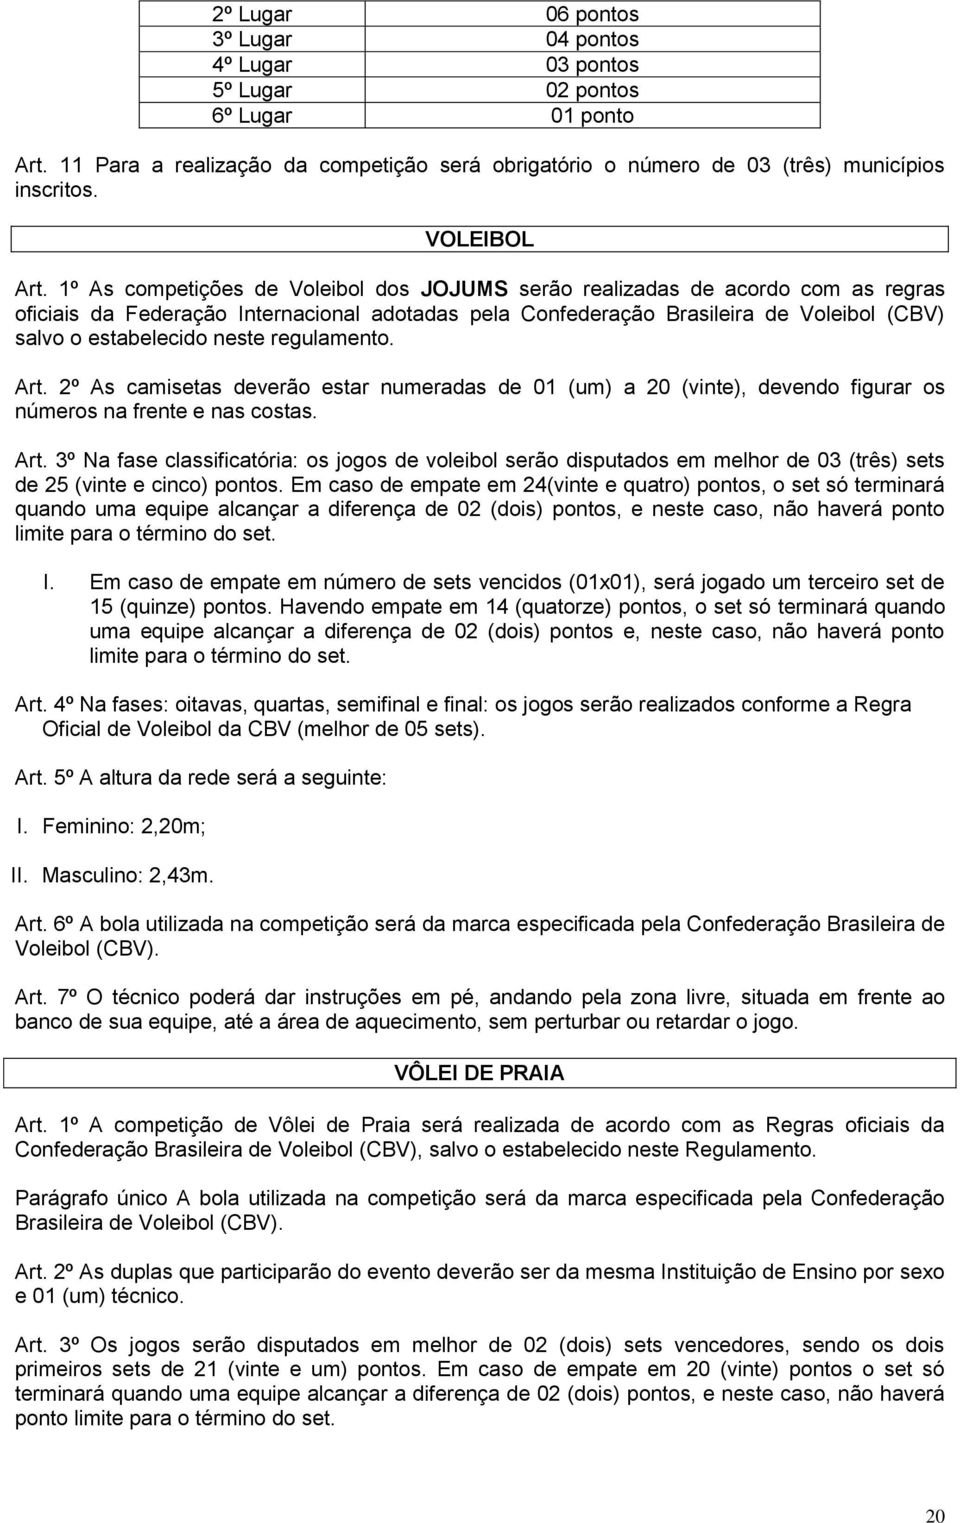 1º As competições de Voleibol dos JOJUMS serão realizadas de acordo com as regras oficiais da Federação Internacional adotadas pela Confederação Brasileira de Voleibol (CBV) salvo o estabelecido